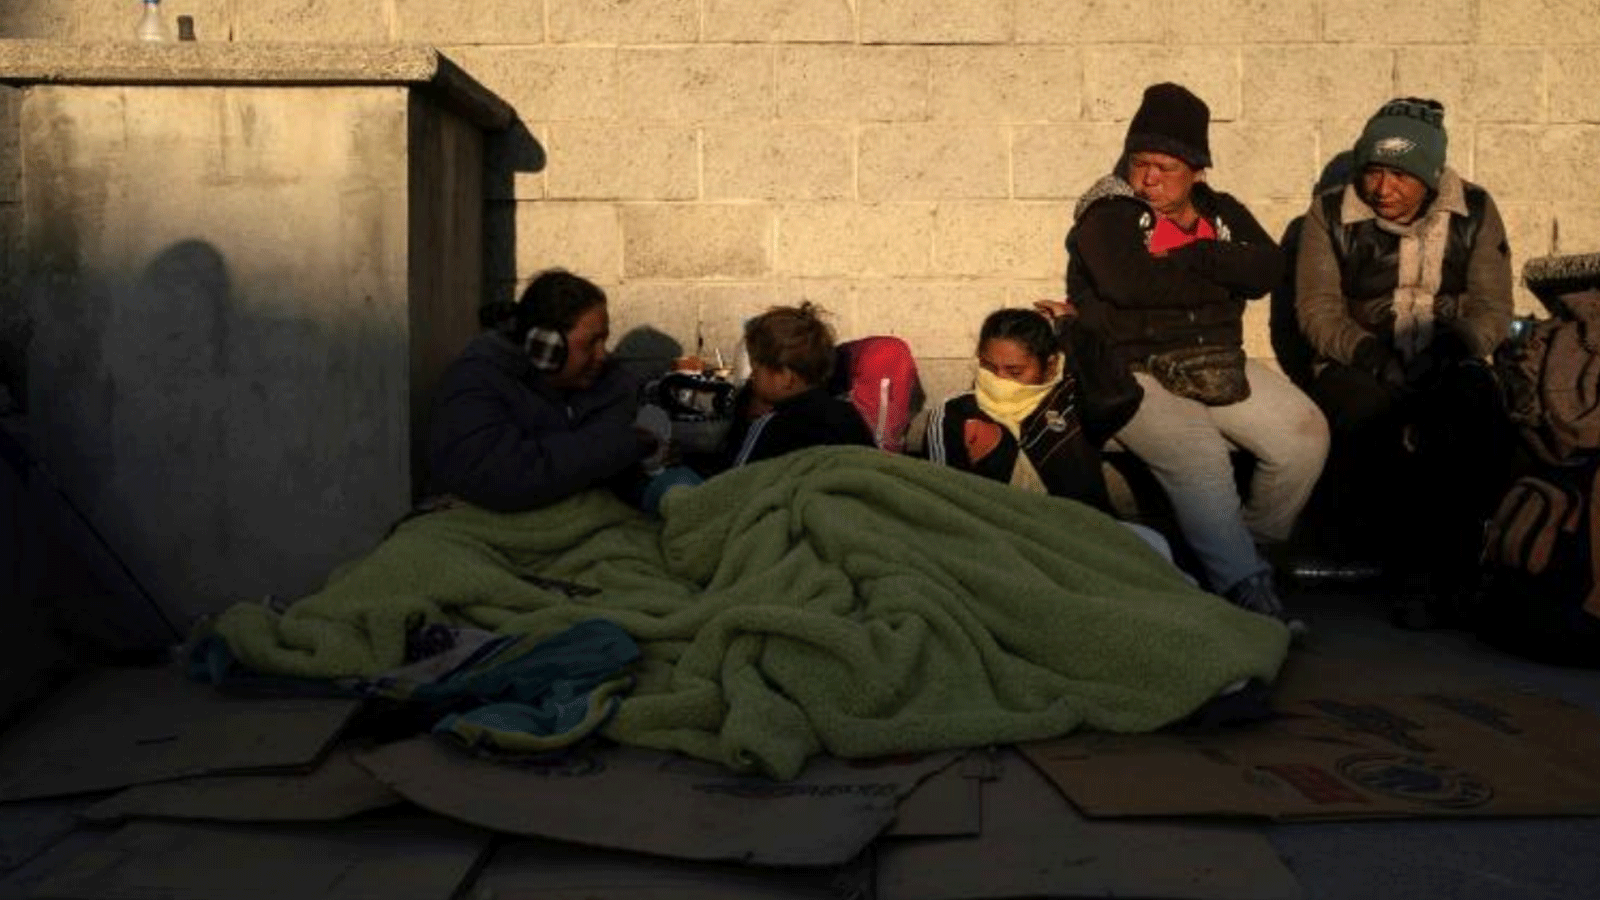 المهاجرون يستيقظون بعد قضاء الليل خارج جدران مركز الاحتجاز حيث لقي 38 منهم مصرعهم في حريق في سيوداد خواريز. المكسيك 29 آذار\مارس 2023